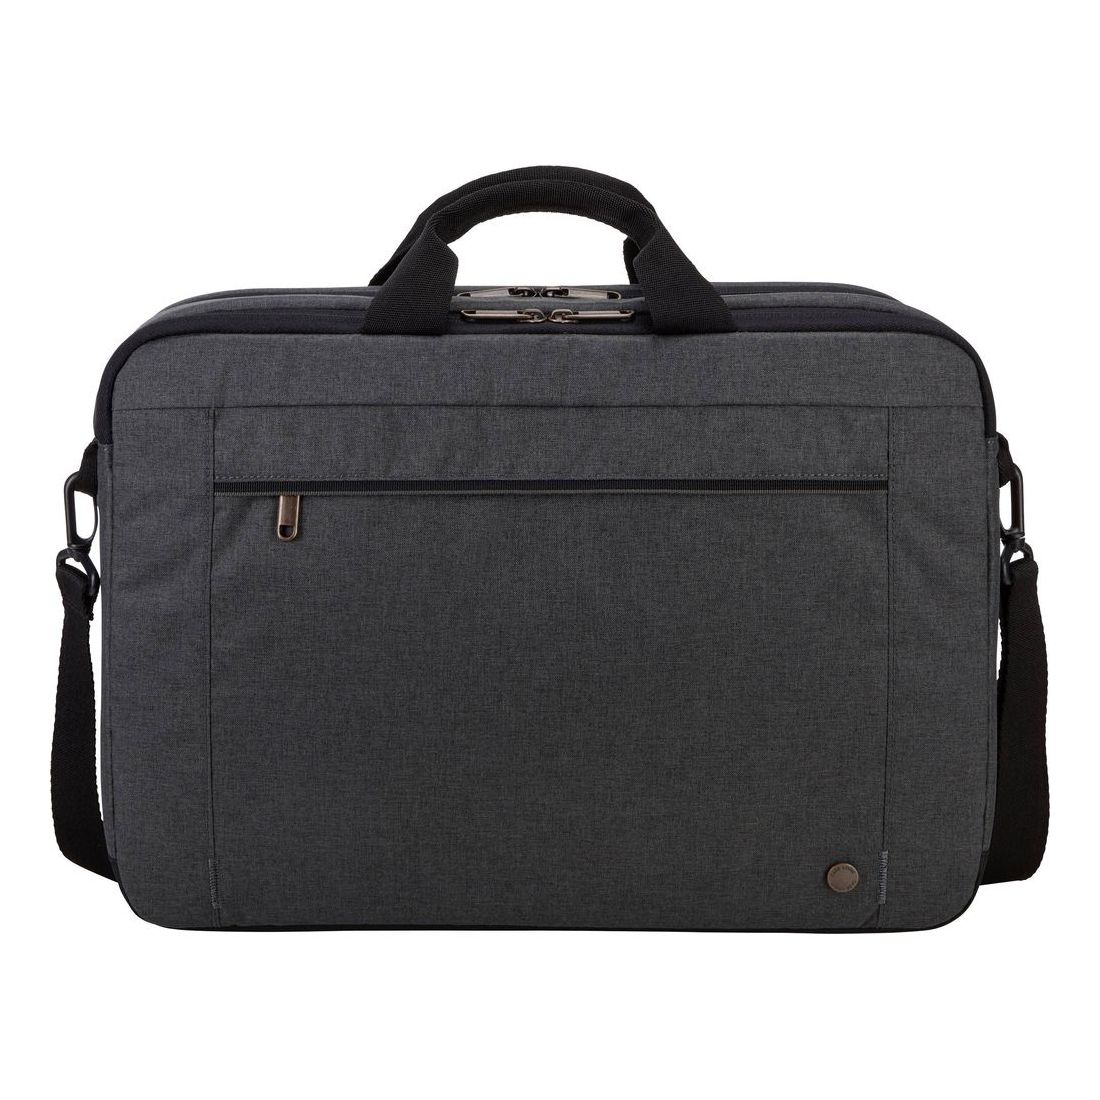 حقيبة كتف إرا 116 أتاشي مقاس 15.6 بوصة من كيس لوجيك، باللون الأسود